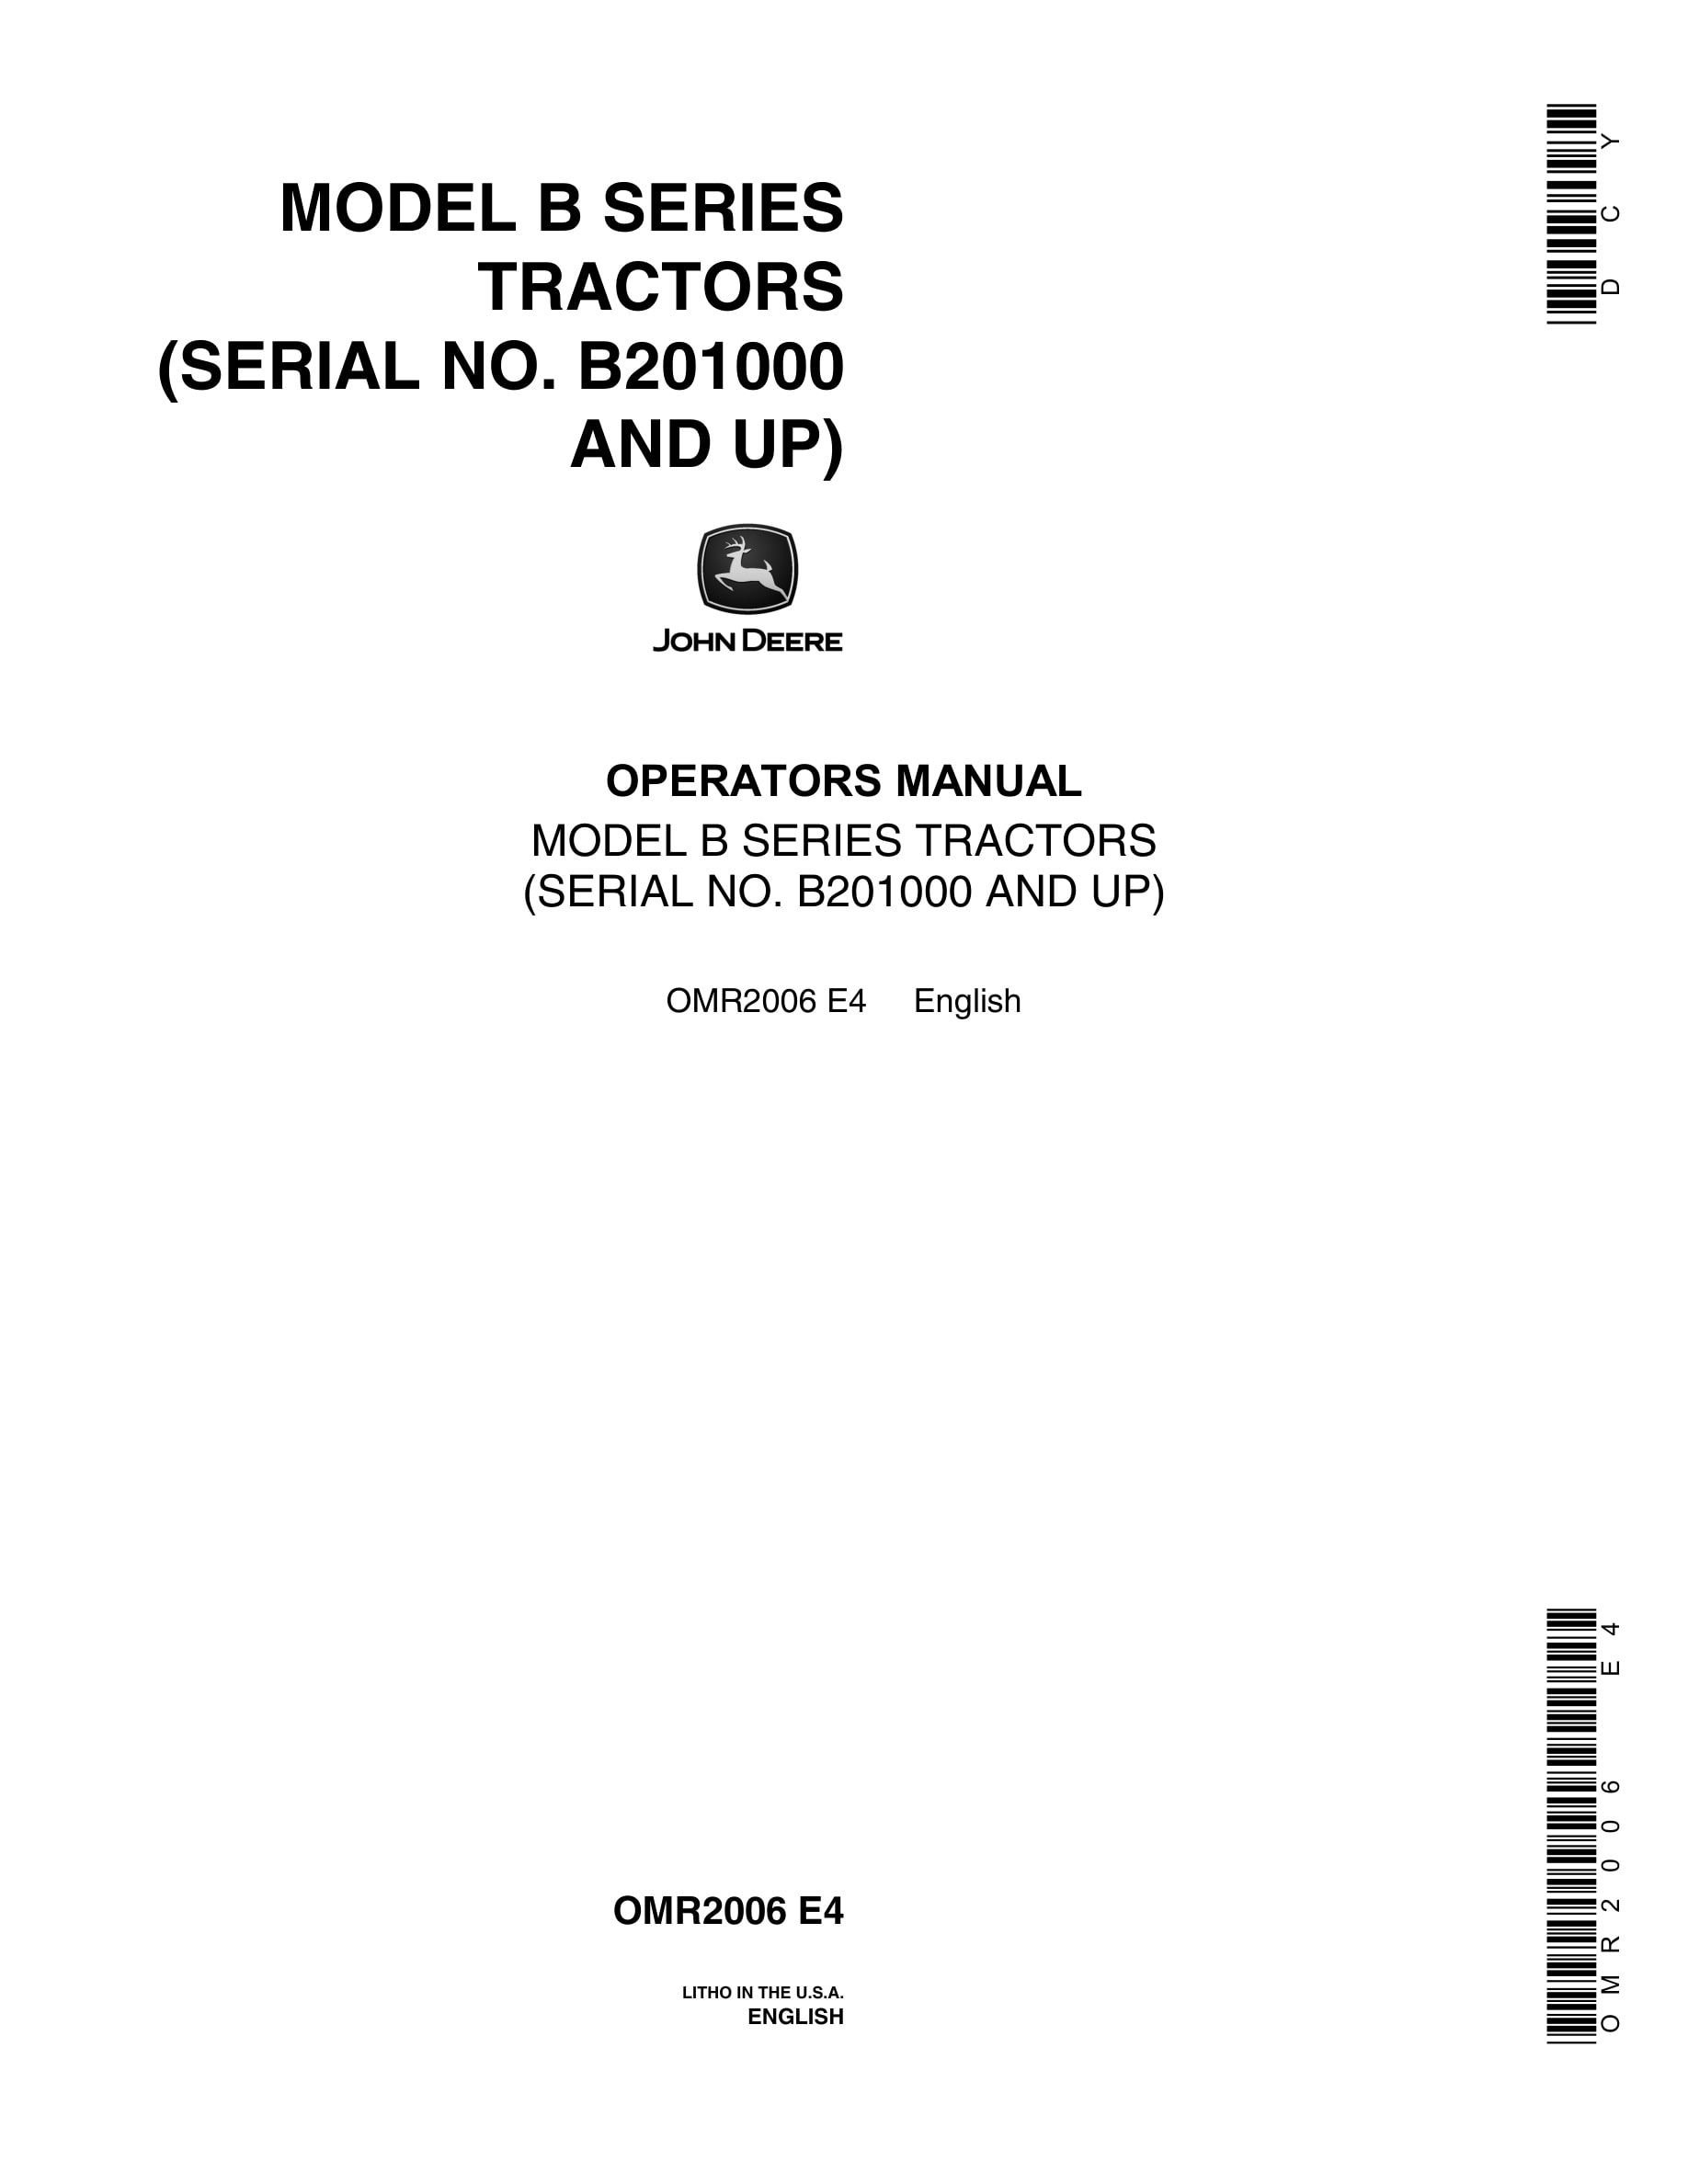 John Deere Model B Tractor Operator Manual OMR2006-1